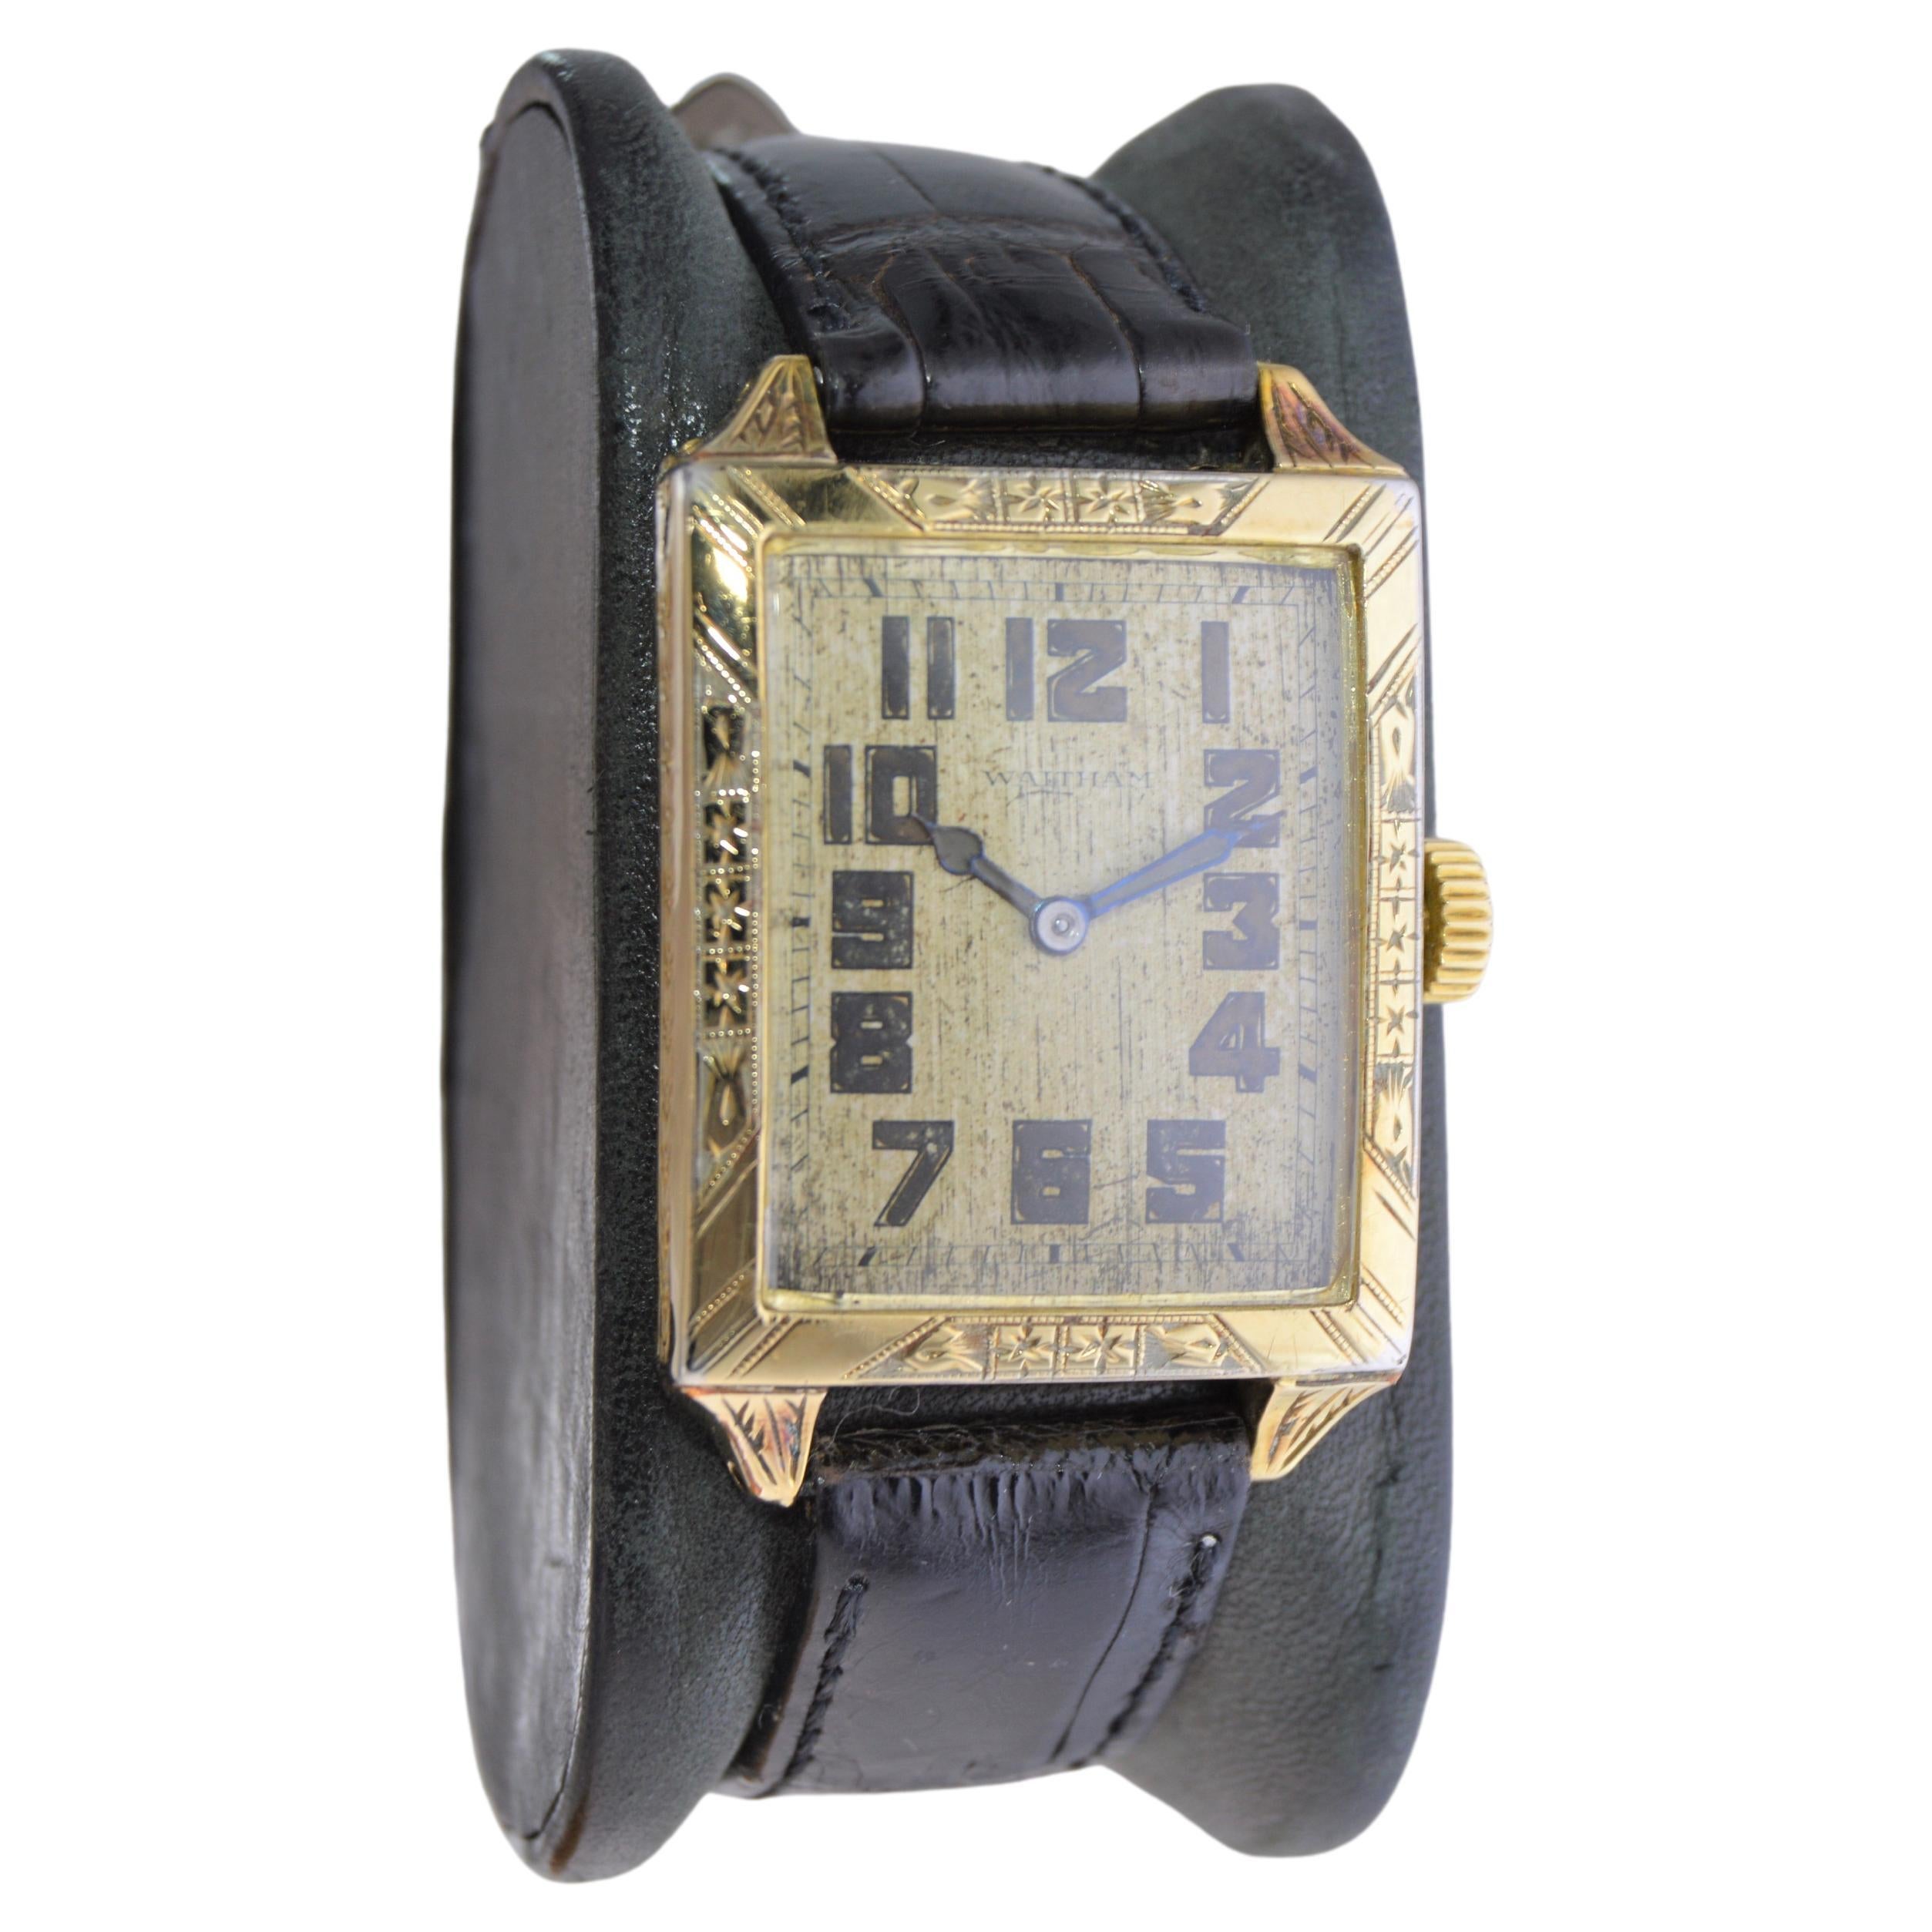 FABRIK / HAUS: Waltham Watch Company
STIL / REFERENZ: Art Deco / Panzer 
METALL / MATERIAL: 14Kt. Gelbgold gefüllt 
CIRCA / JAHR: 1926
ABMESSUNGEN / GRÖSSE: Länge 41mm X Breite 27mm
UHRWERK / 25 KALIBER: Handaufzug / 7 Jewels 
ZIFFERBLATT / ZEIGER: